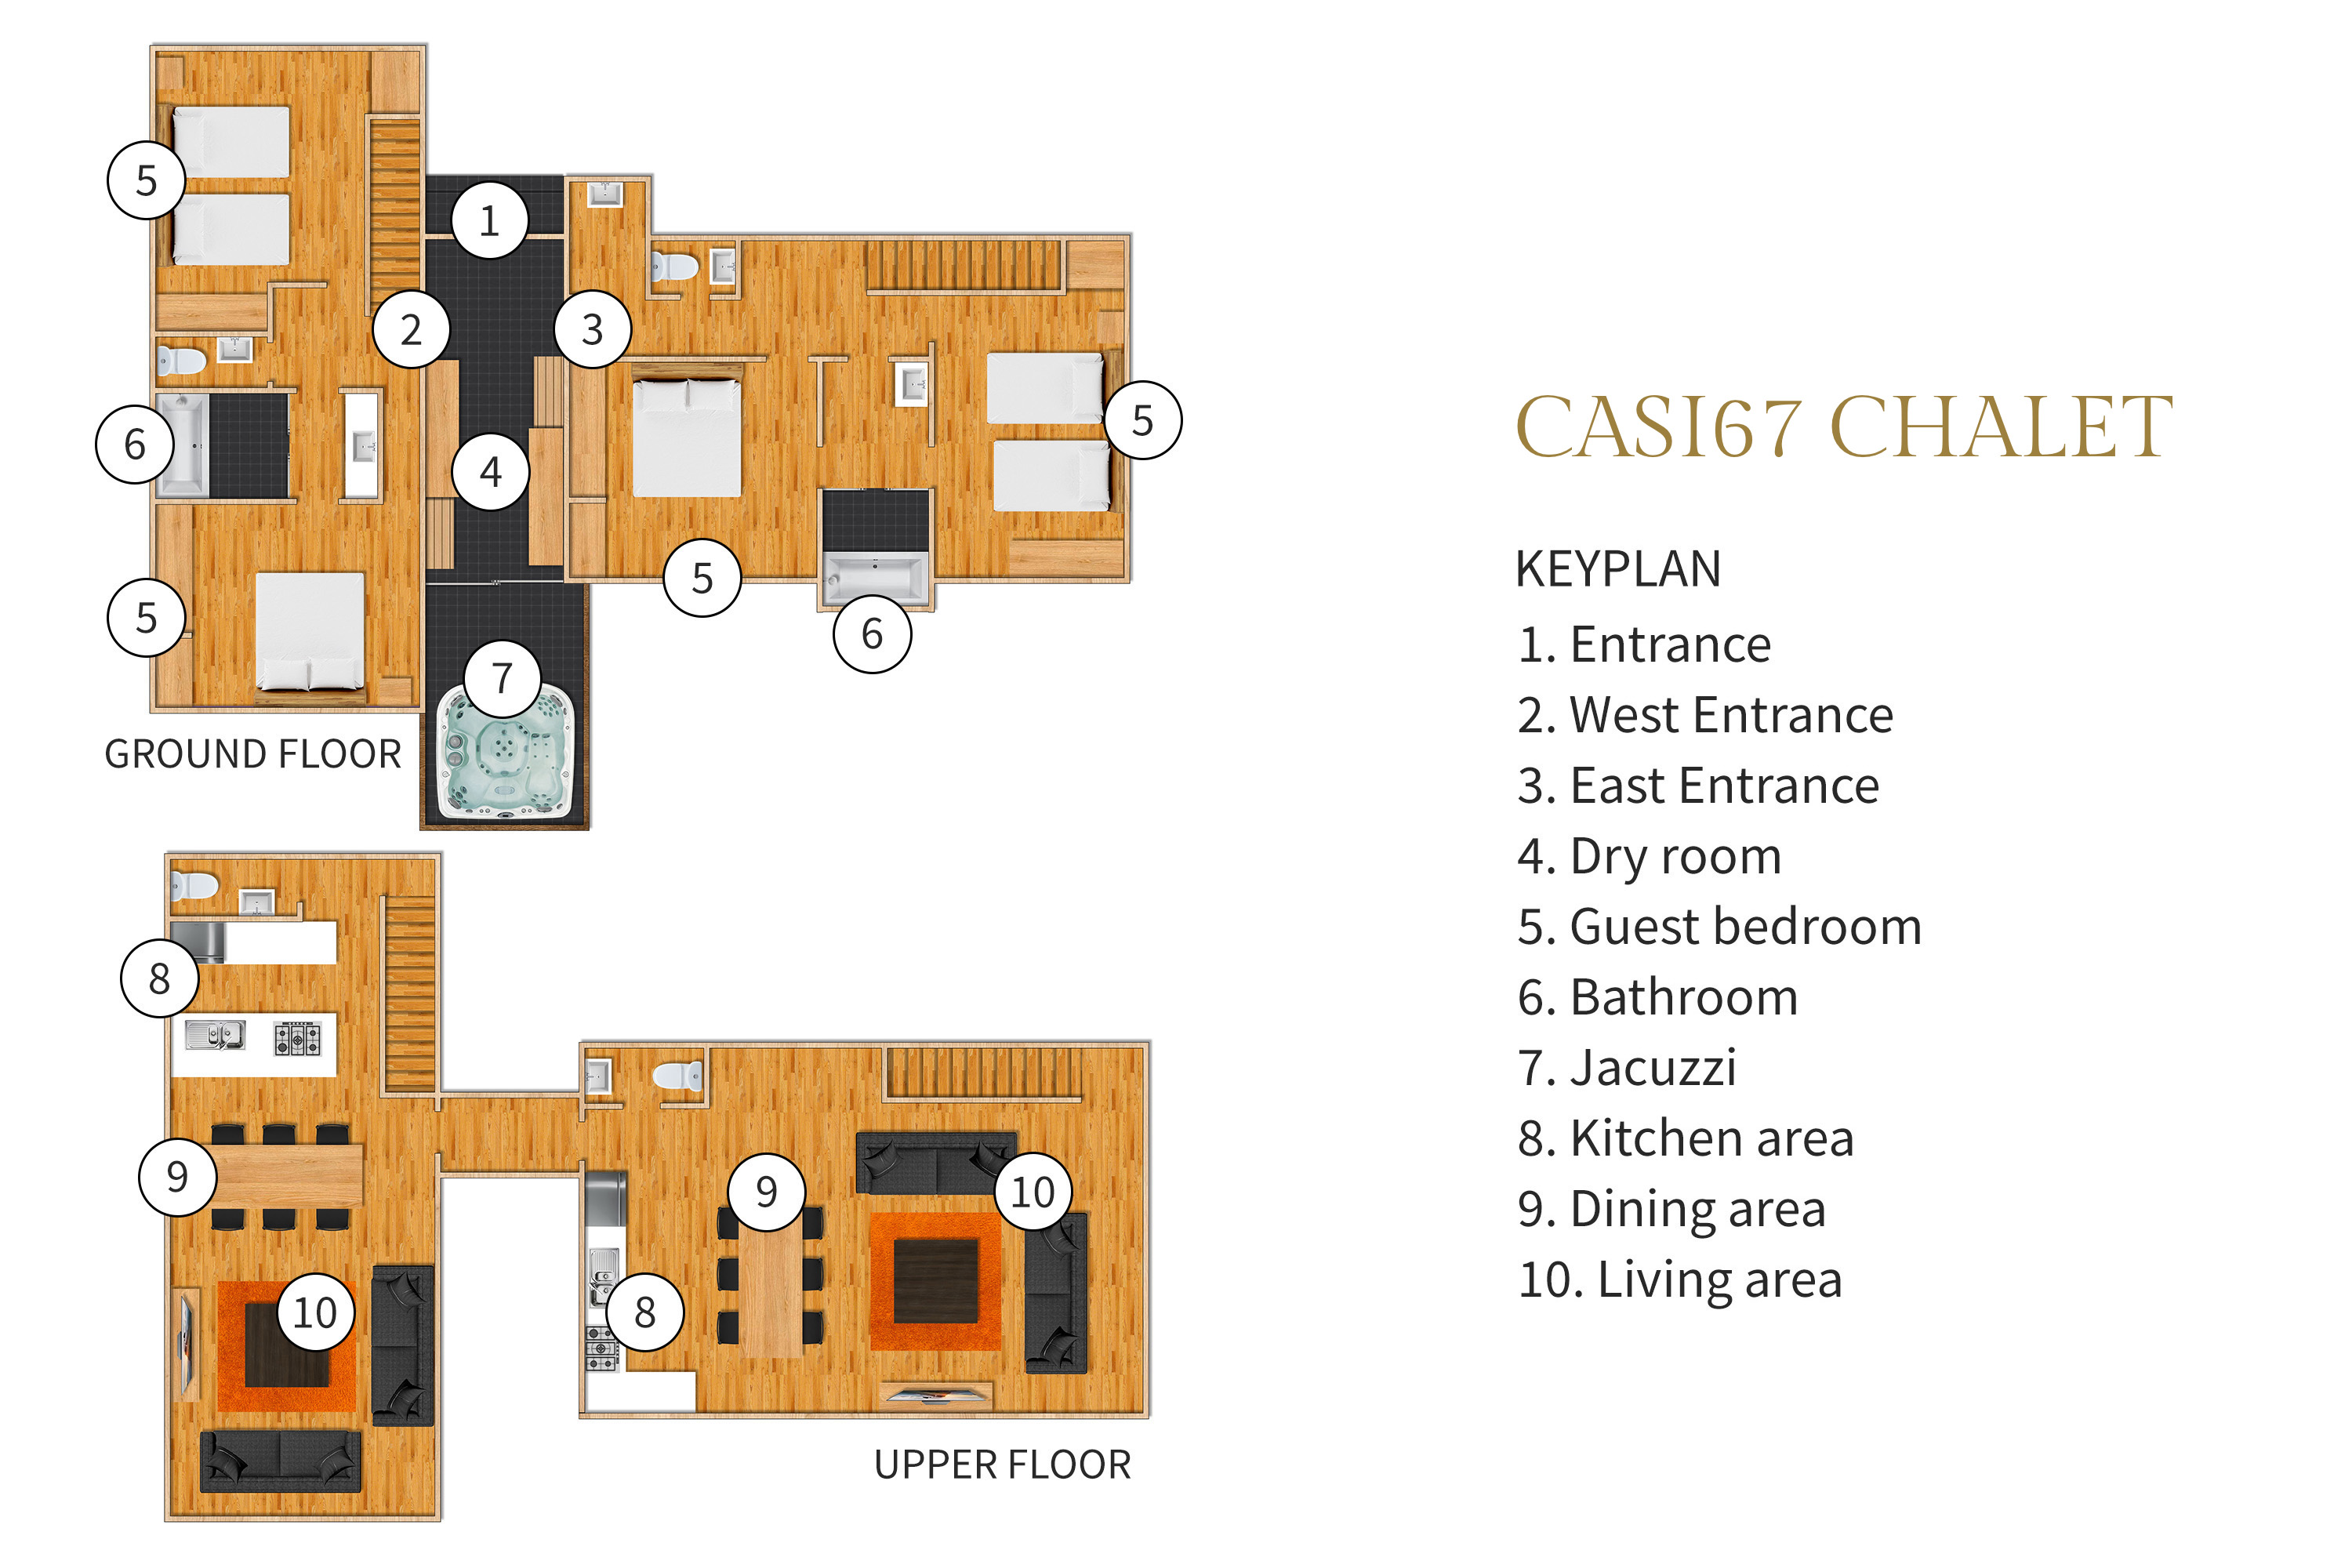 Casi67 Chalet - Floorplan<br />